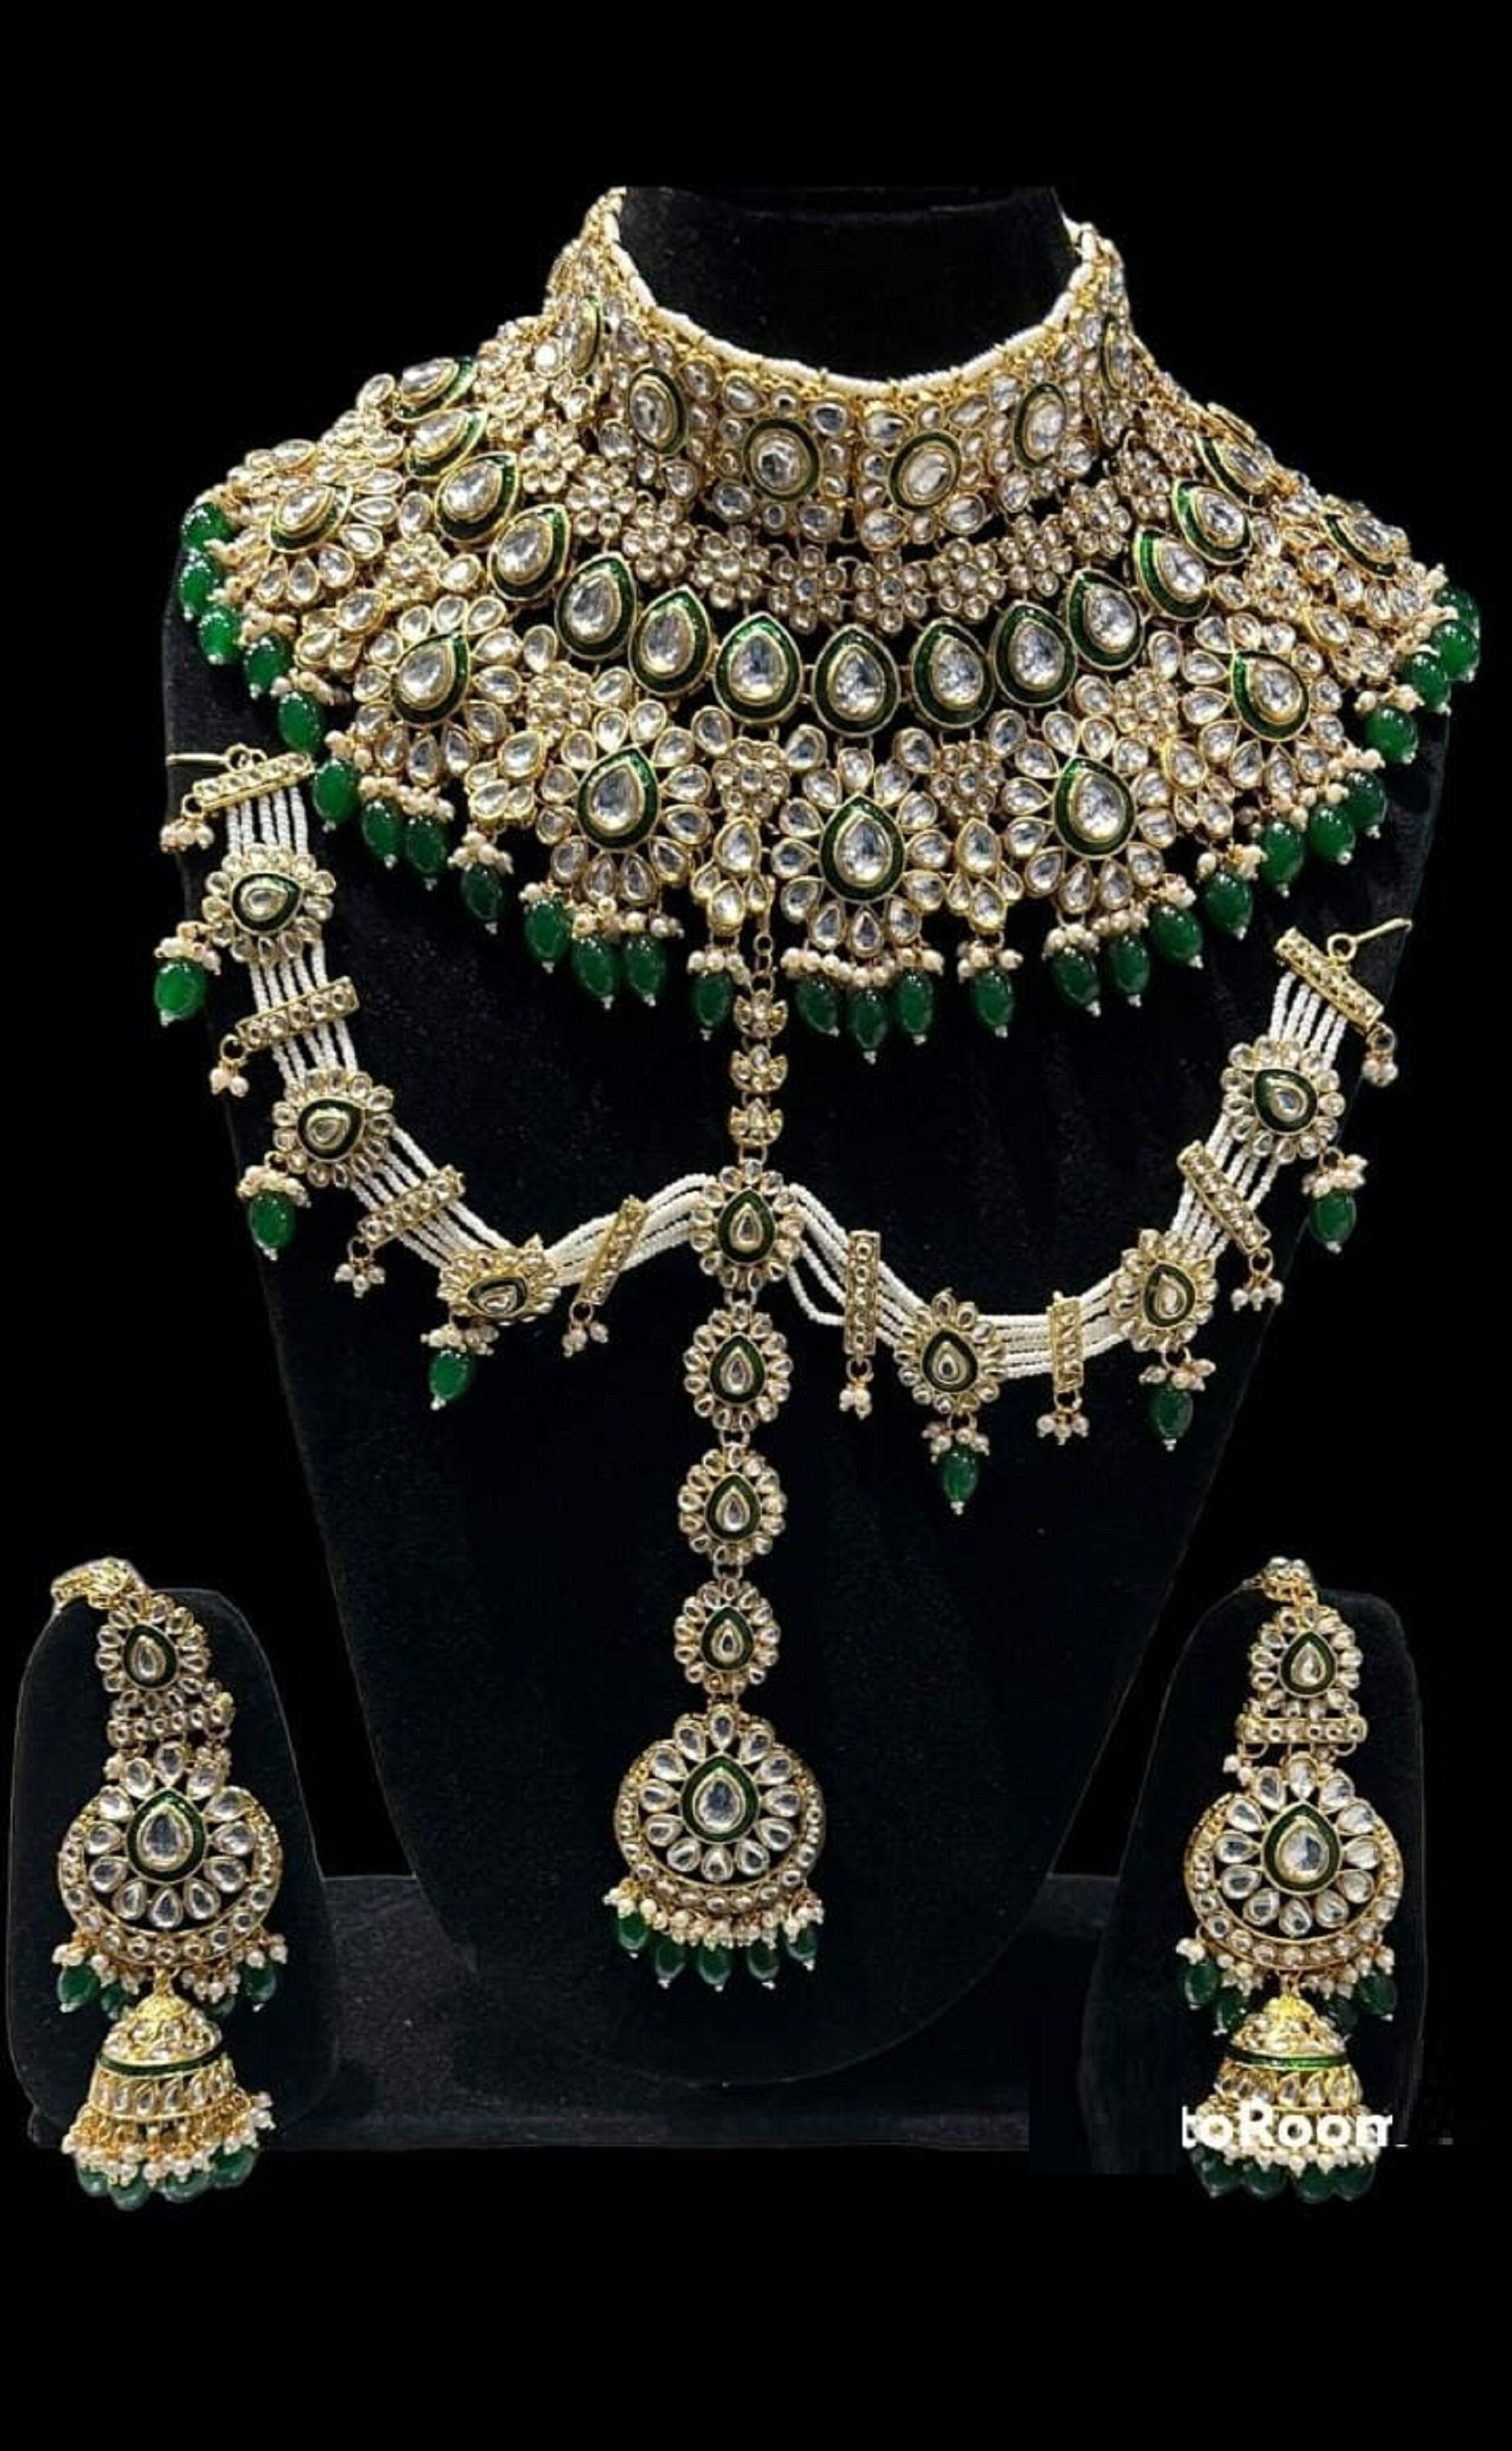 Rajasthan meena jewellery is in Nathdwara, India. | By Rajasthan meena  jewellery | Facebook